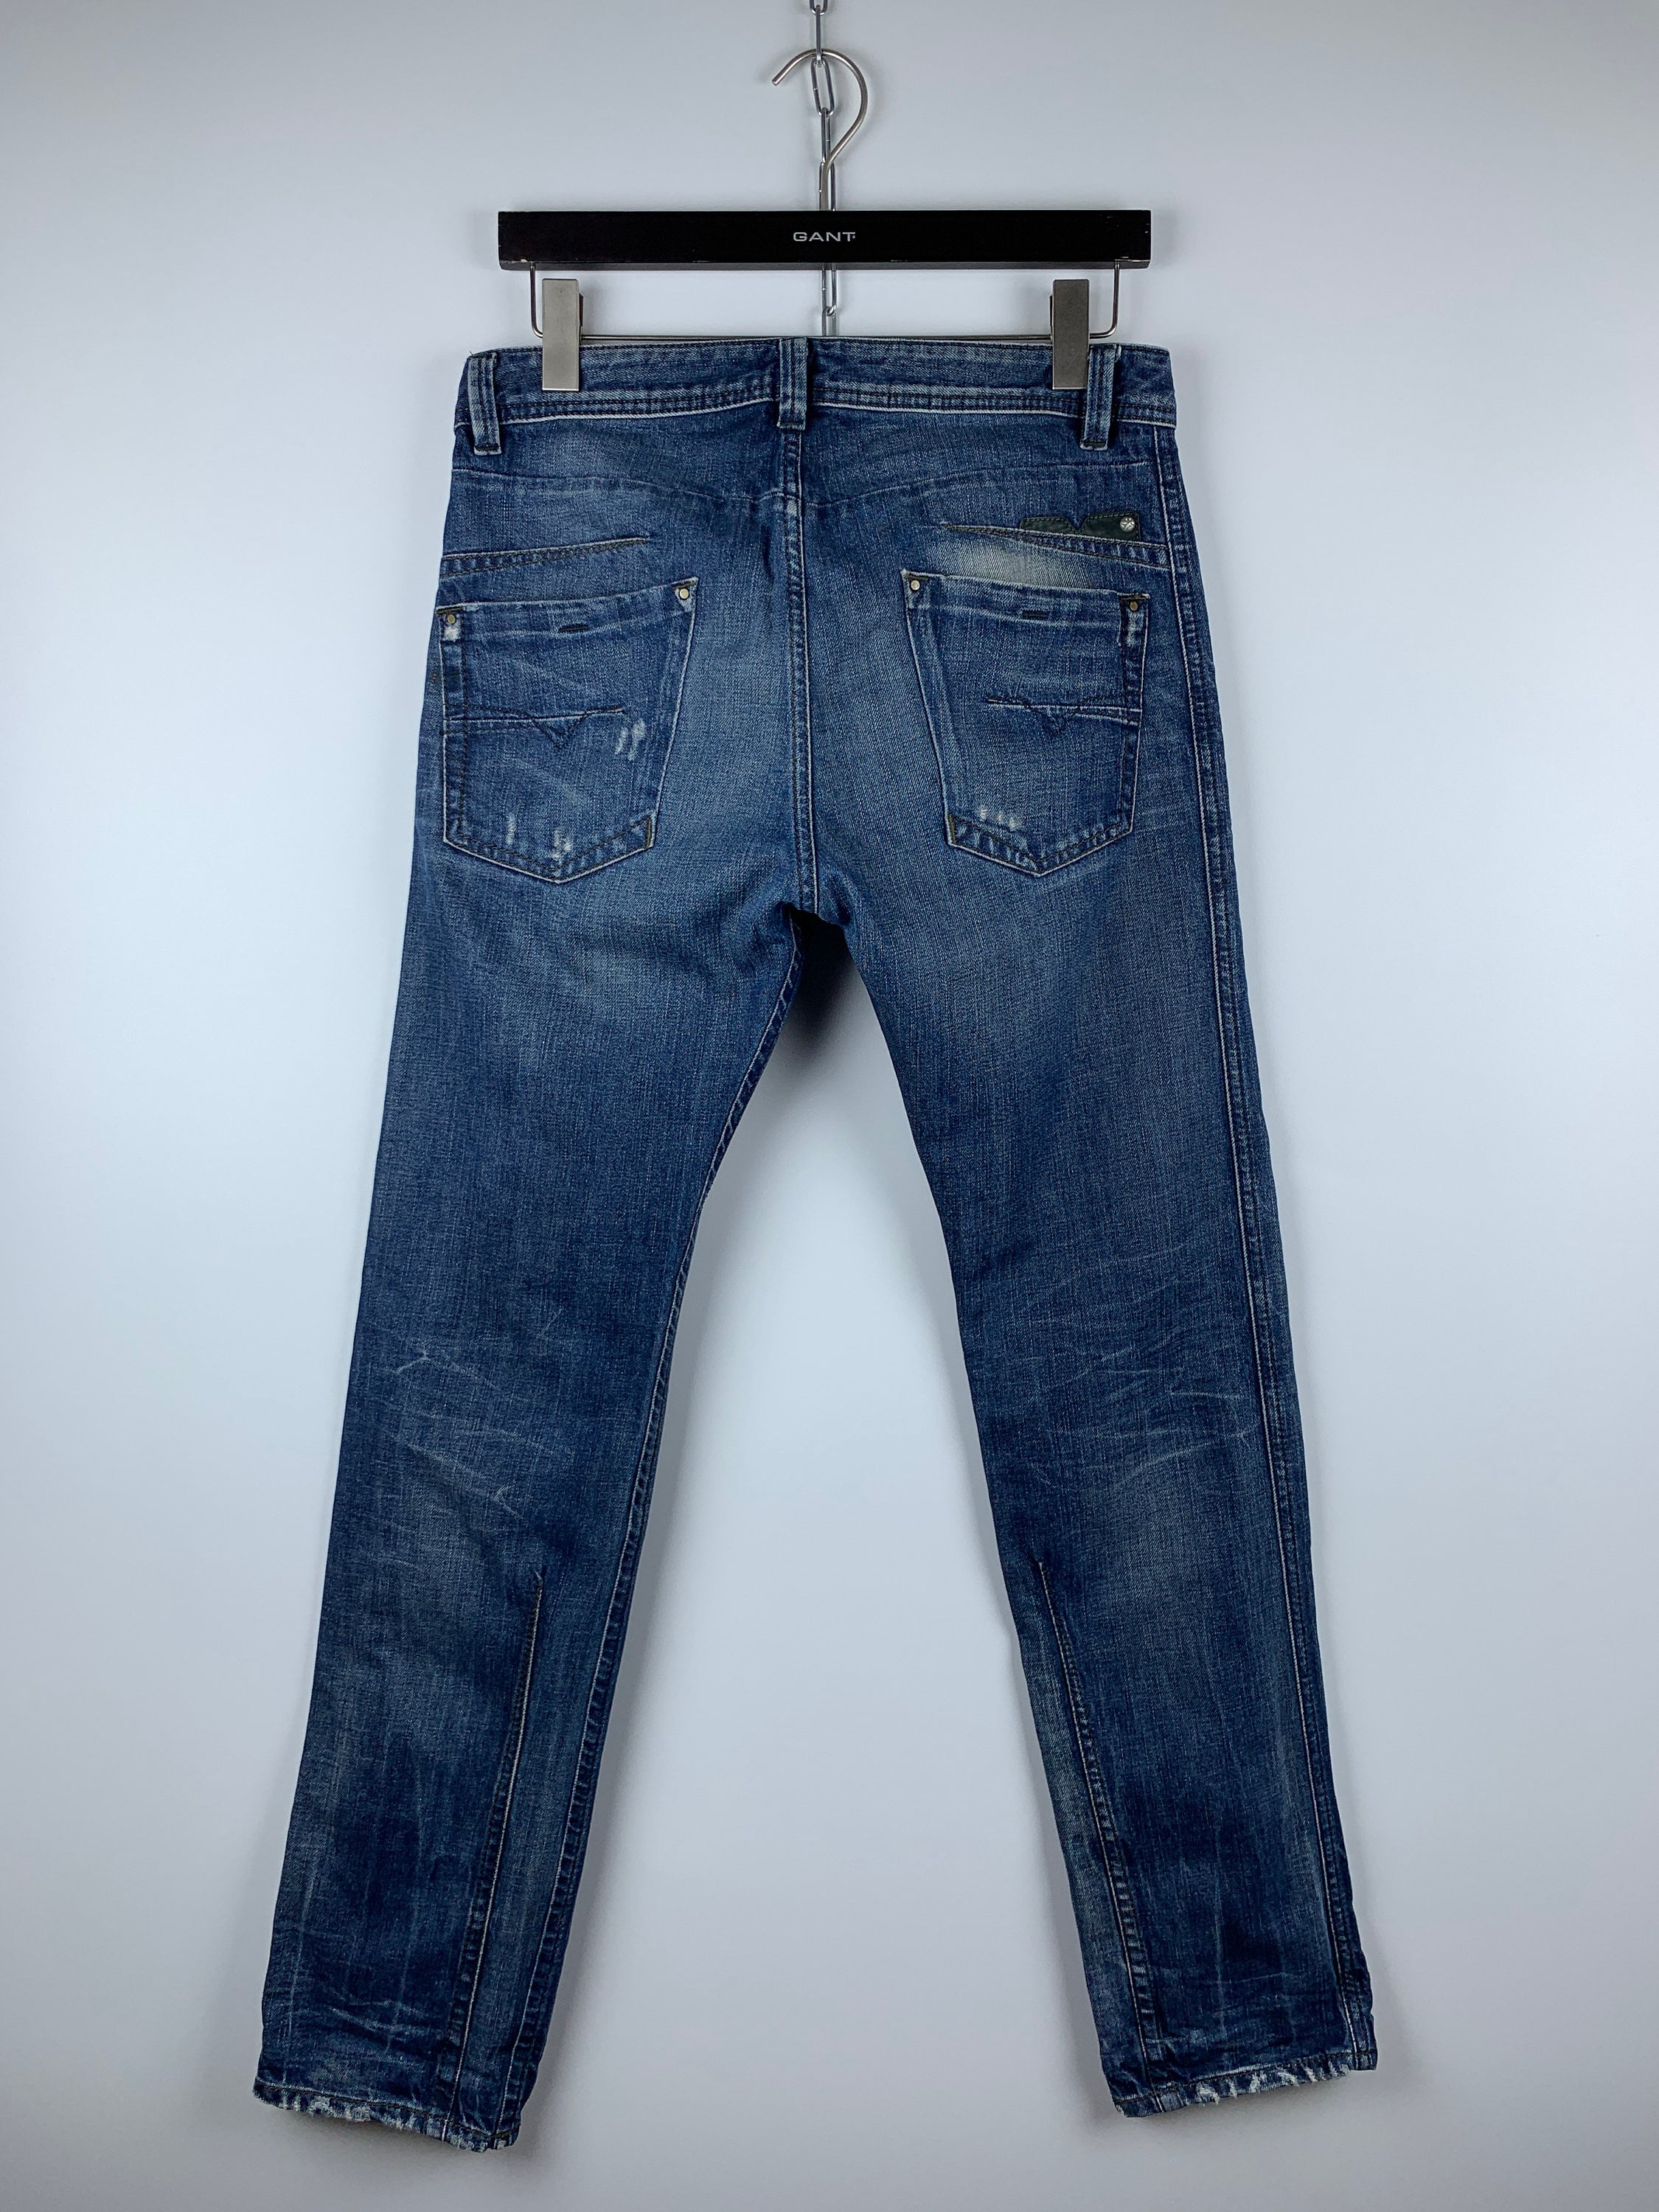 Men's Diesel Darron Regular Slim Tapered Button Jeans Size Etsy Finland